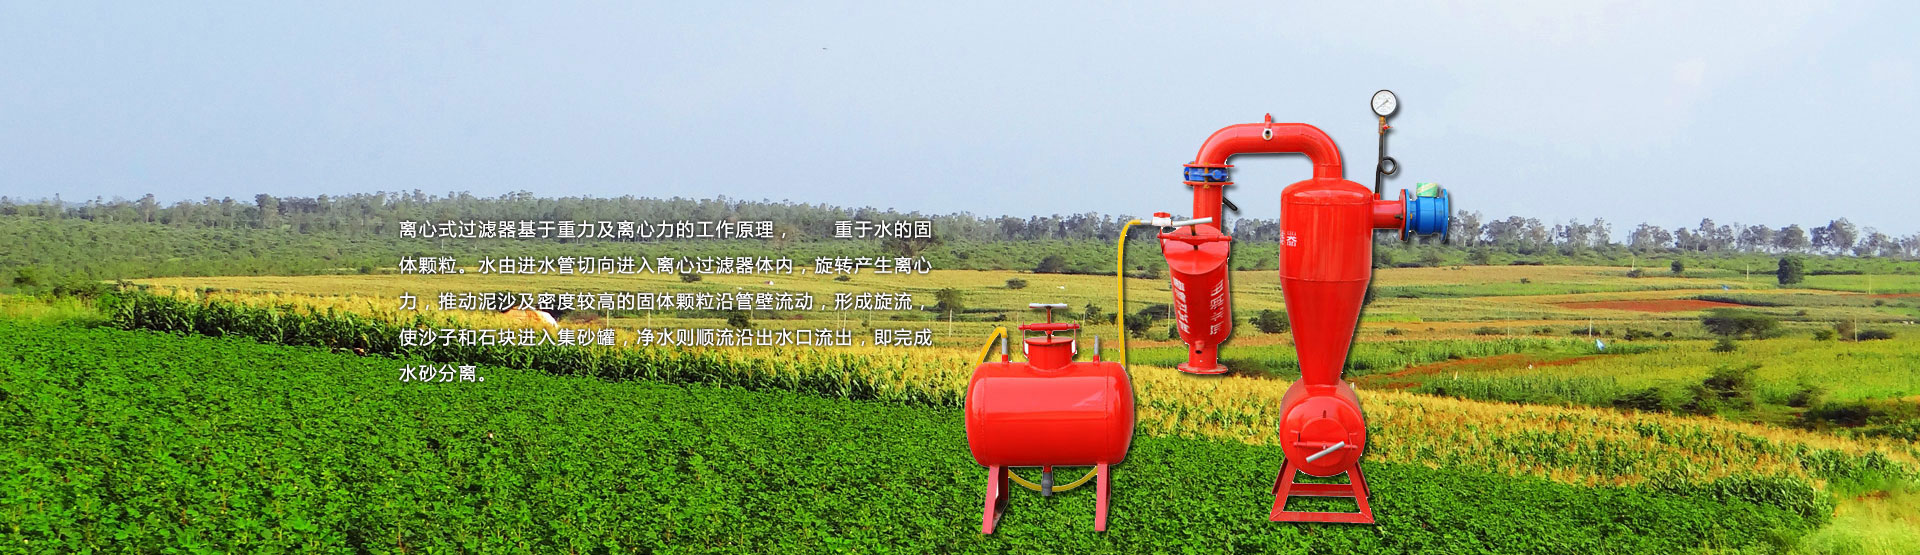 滴灌自动化灌溉系统,自动化灌溉